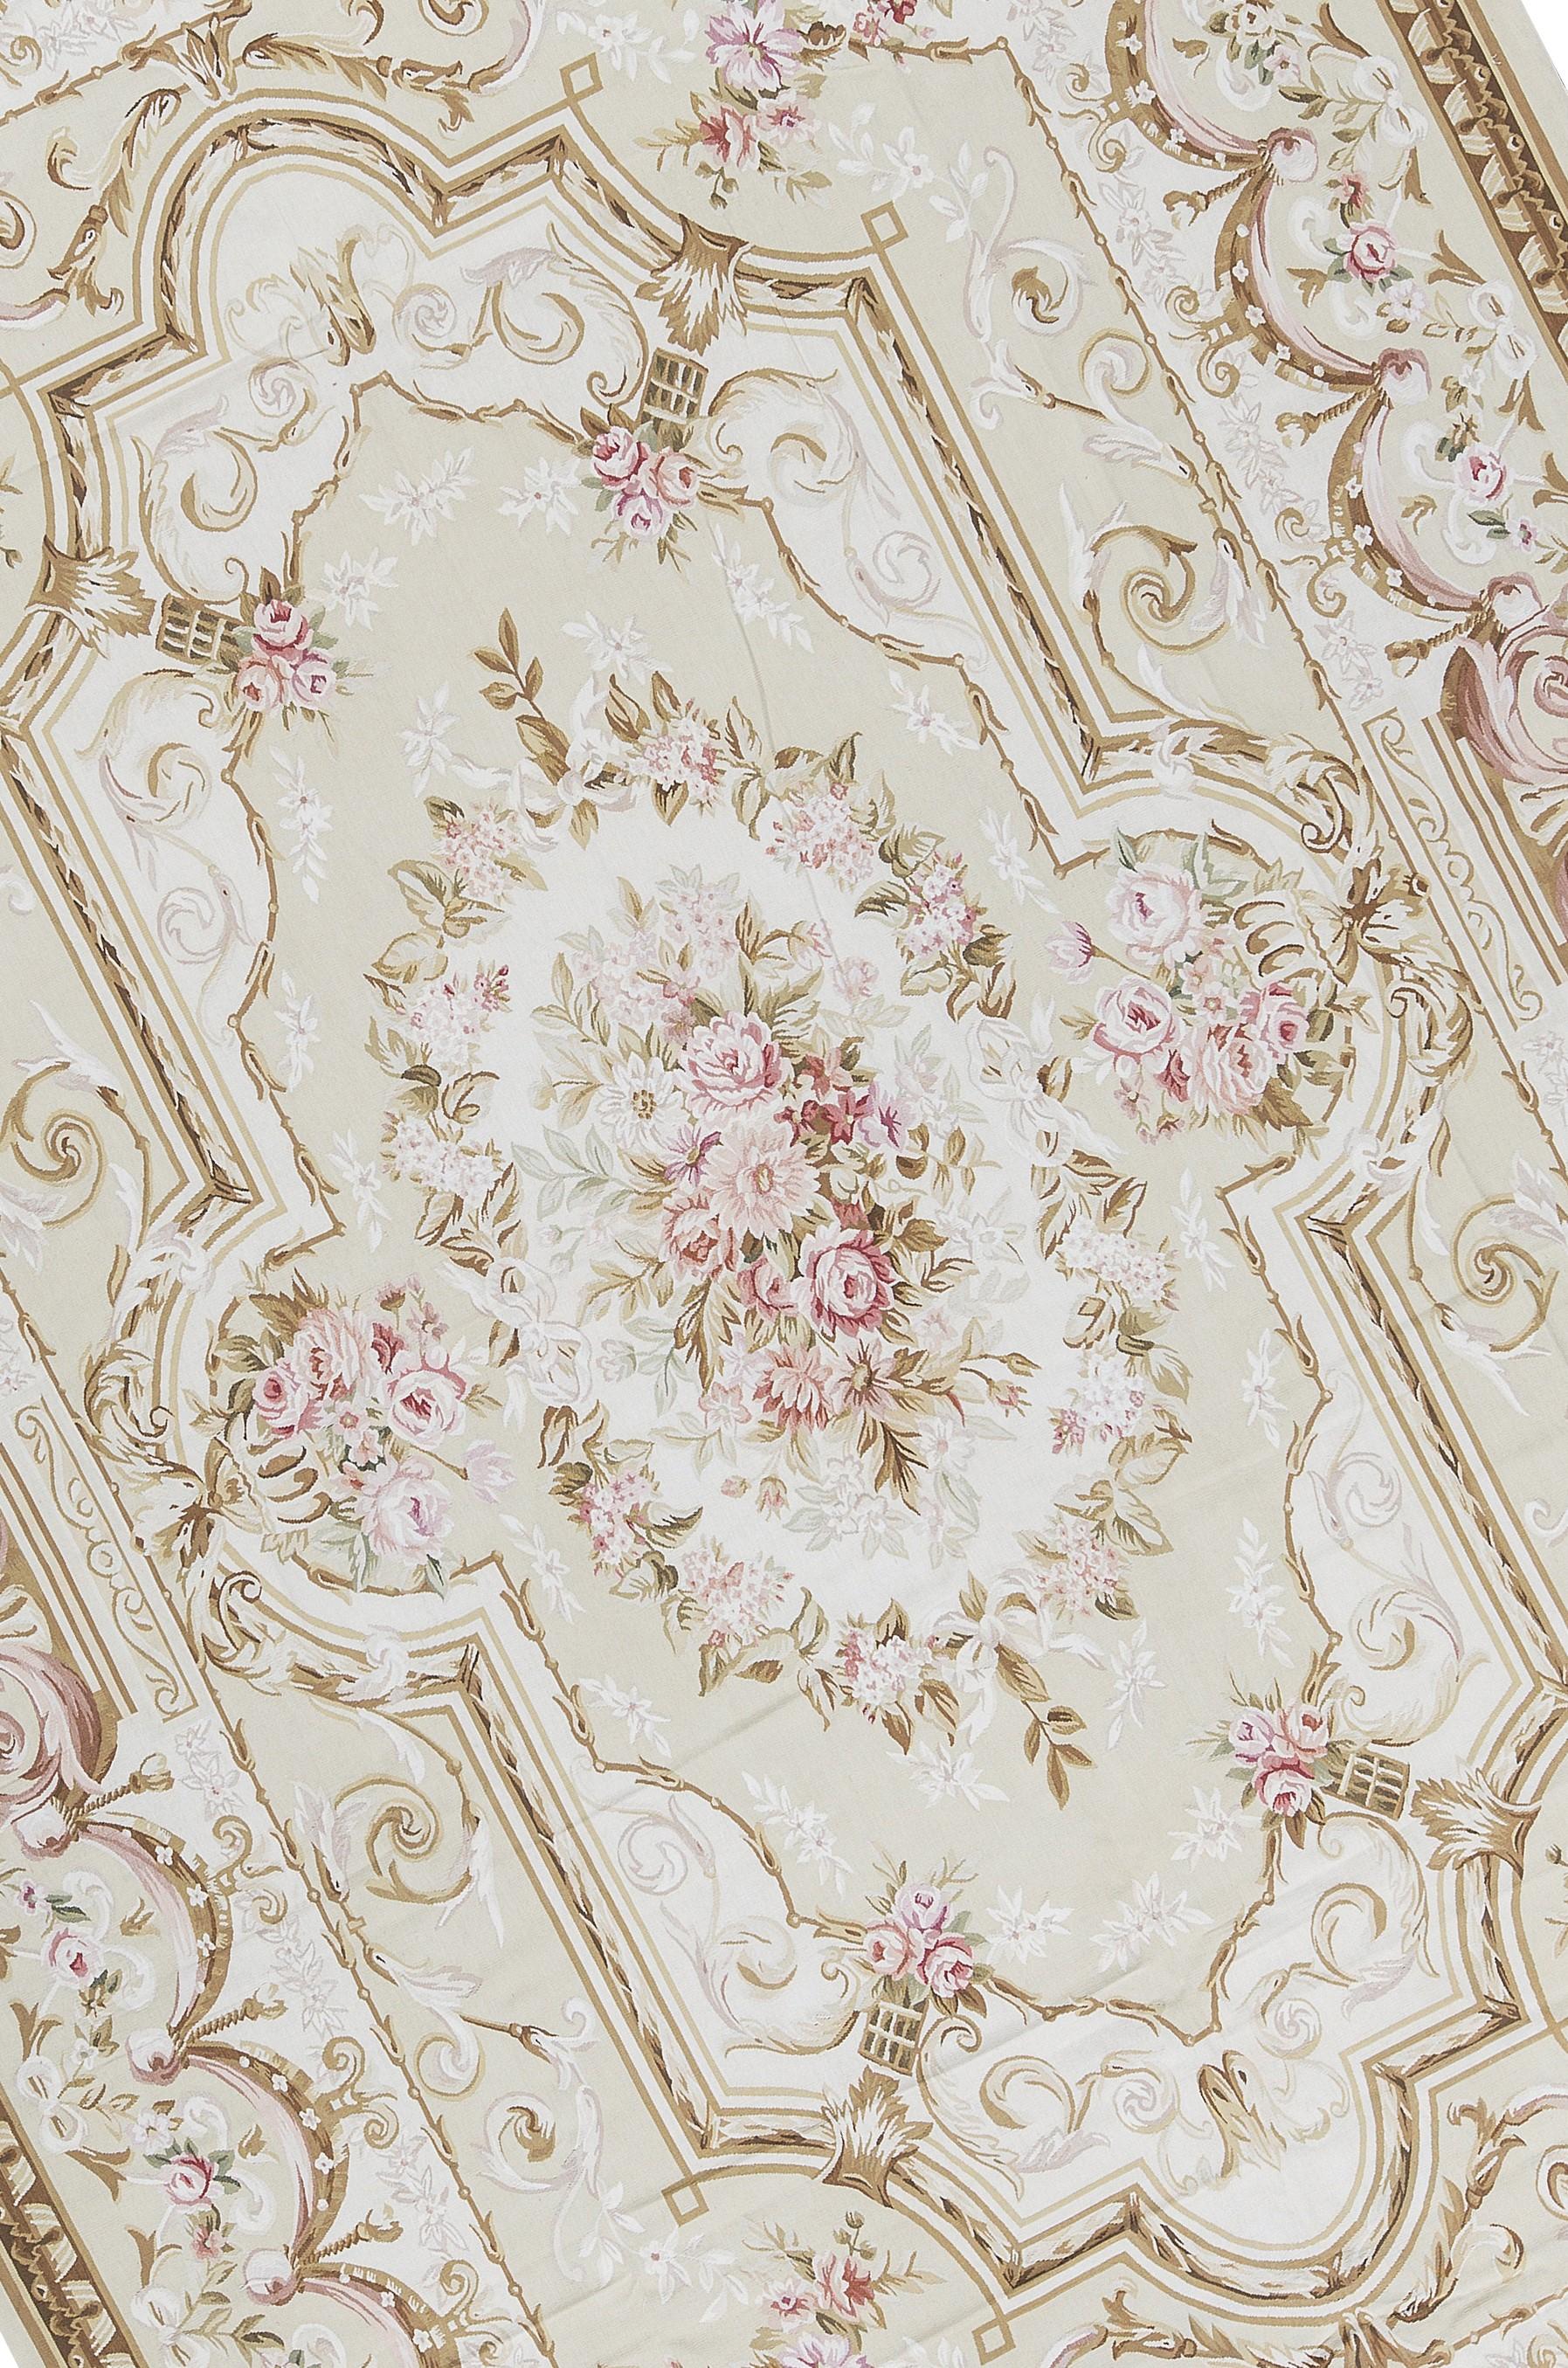 Recréation tissée à la main des tapis français classiques à tissage plat d'Aubusson que l'on trouve dans les plus belles demeures et les plus beaux palais depuis la fin du XVIIe siècle. Taille 10' 10'' x 16' 3''.